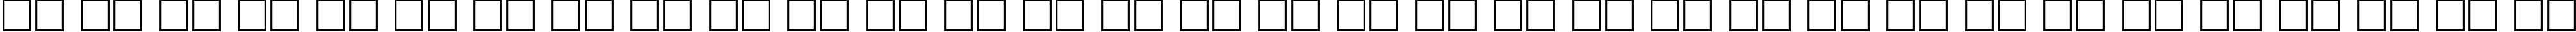 Пример написания русского алфавита шрифтом CourierCTT_50